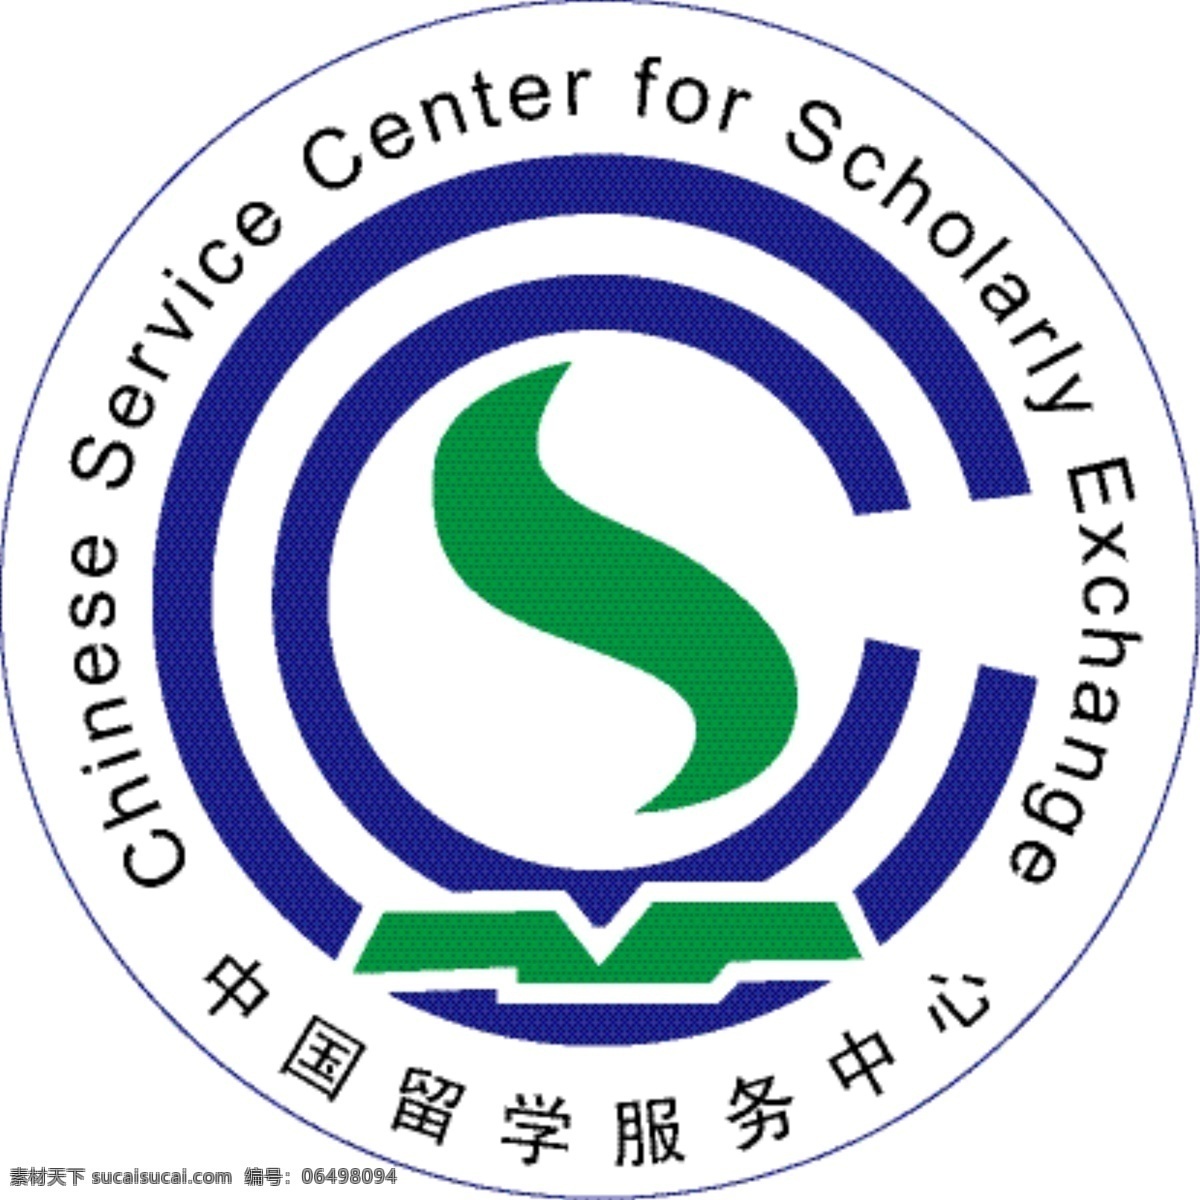 中国留学服务中心 留学中心 logo 公共标识标志 标识标志图标 矢量